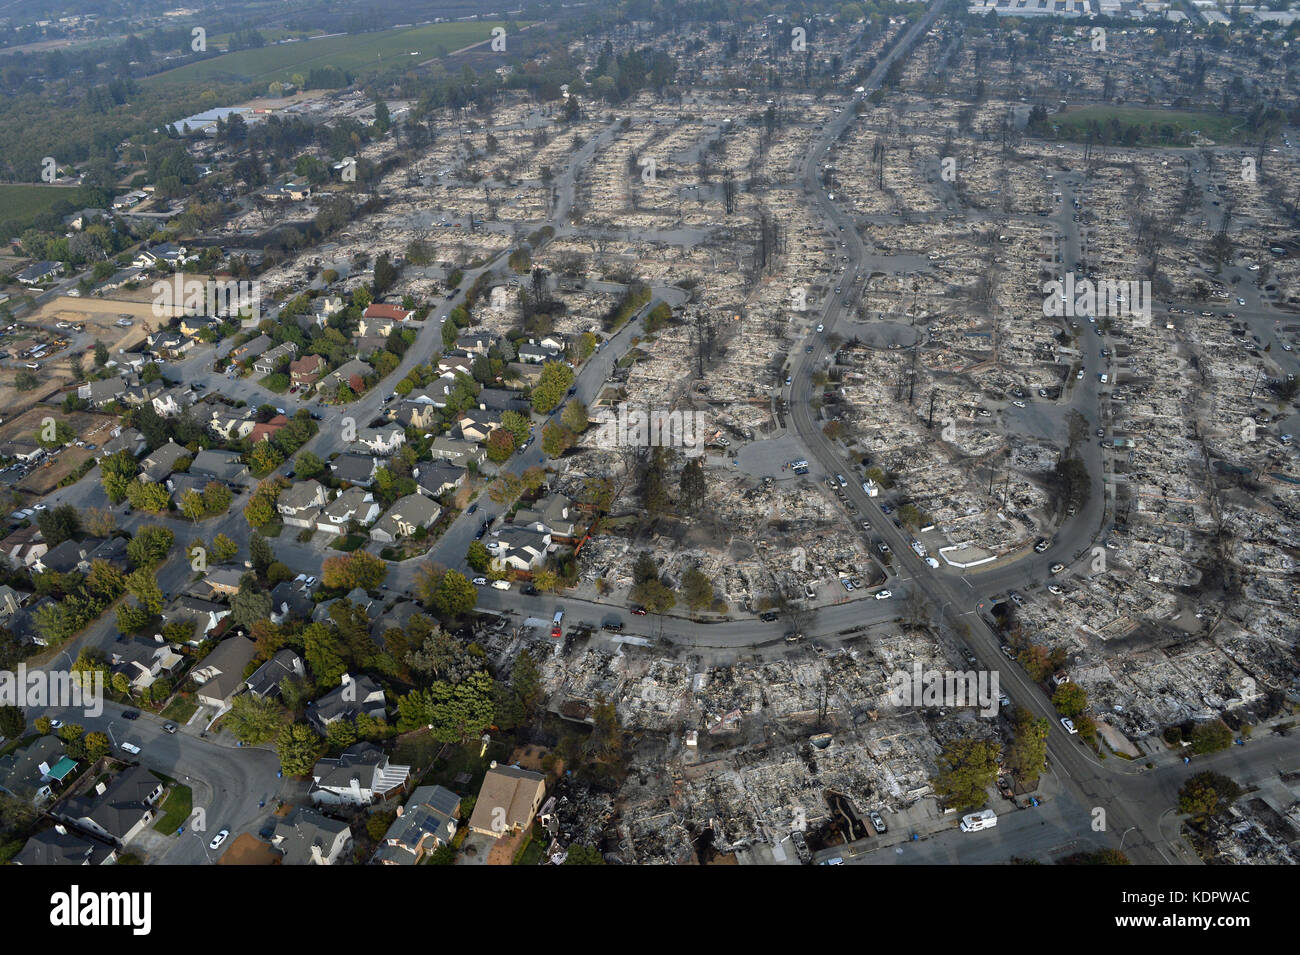 Les vestiges d'un développement de logement après les incendies ont ravagé le quartier de détruire certaines maisons mais en laissant les autres intacts, 14 octobre 2017 à Santa Rosa, en Californie. Banque D'Images